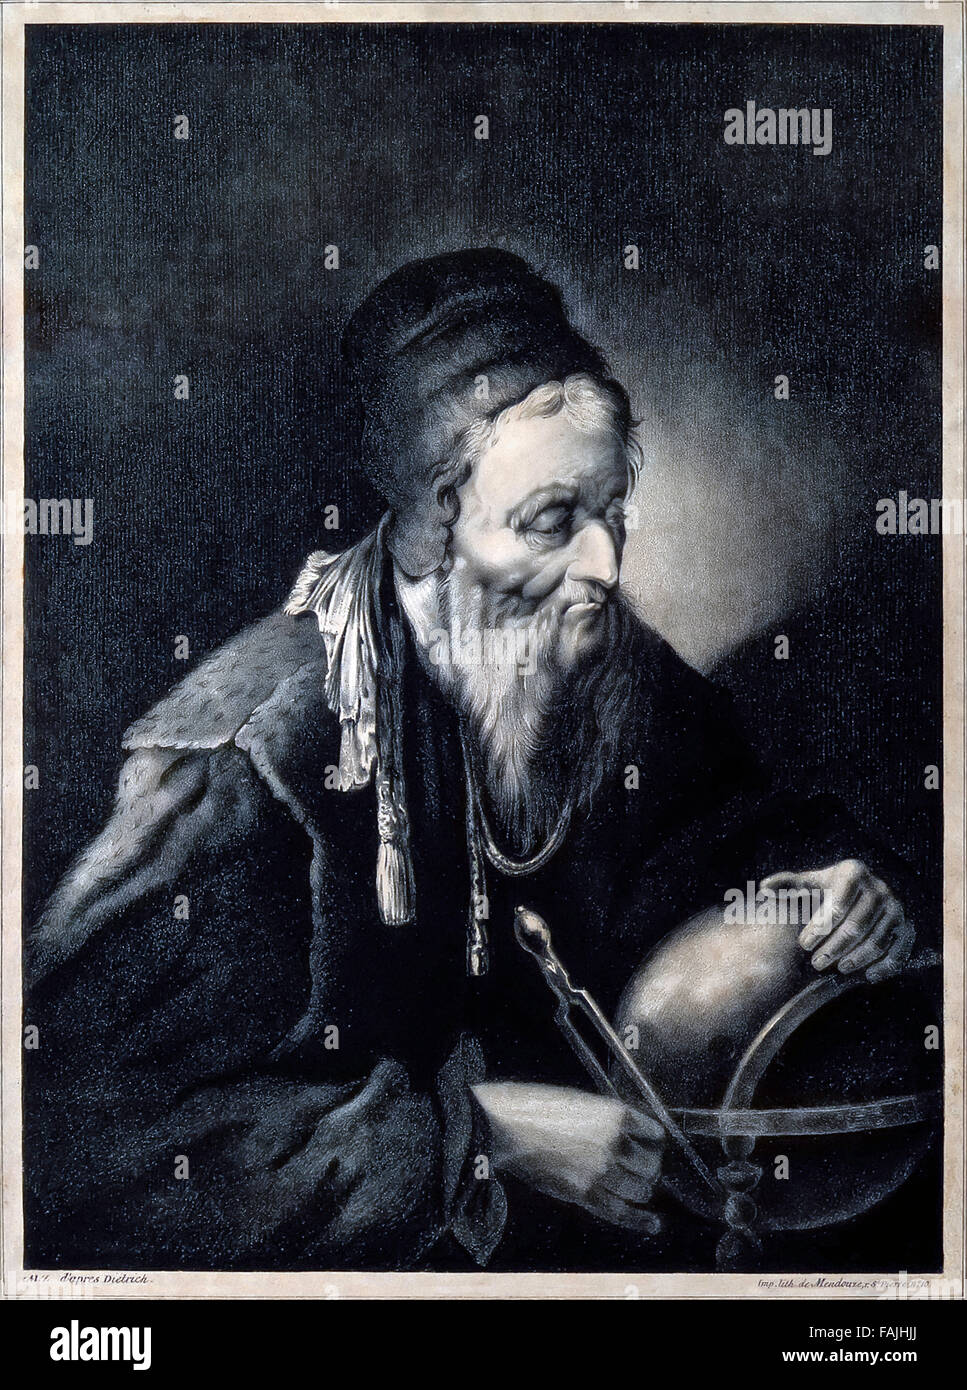 Nostradamus (1503-1566) avec la sphère et boussole, lithographie par Barthélemy-Louis de Mendouze publié en 1831. Voir la description pour plus d'informations. Banque D'Images